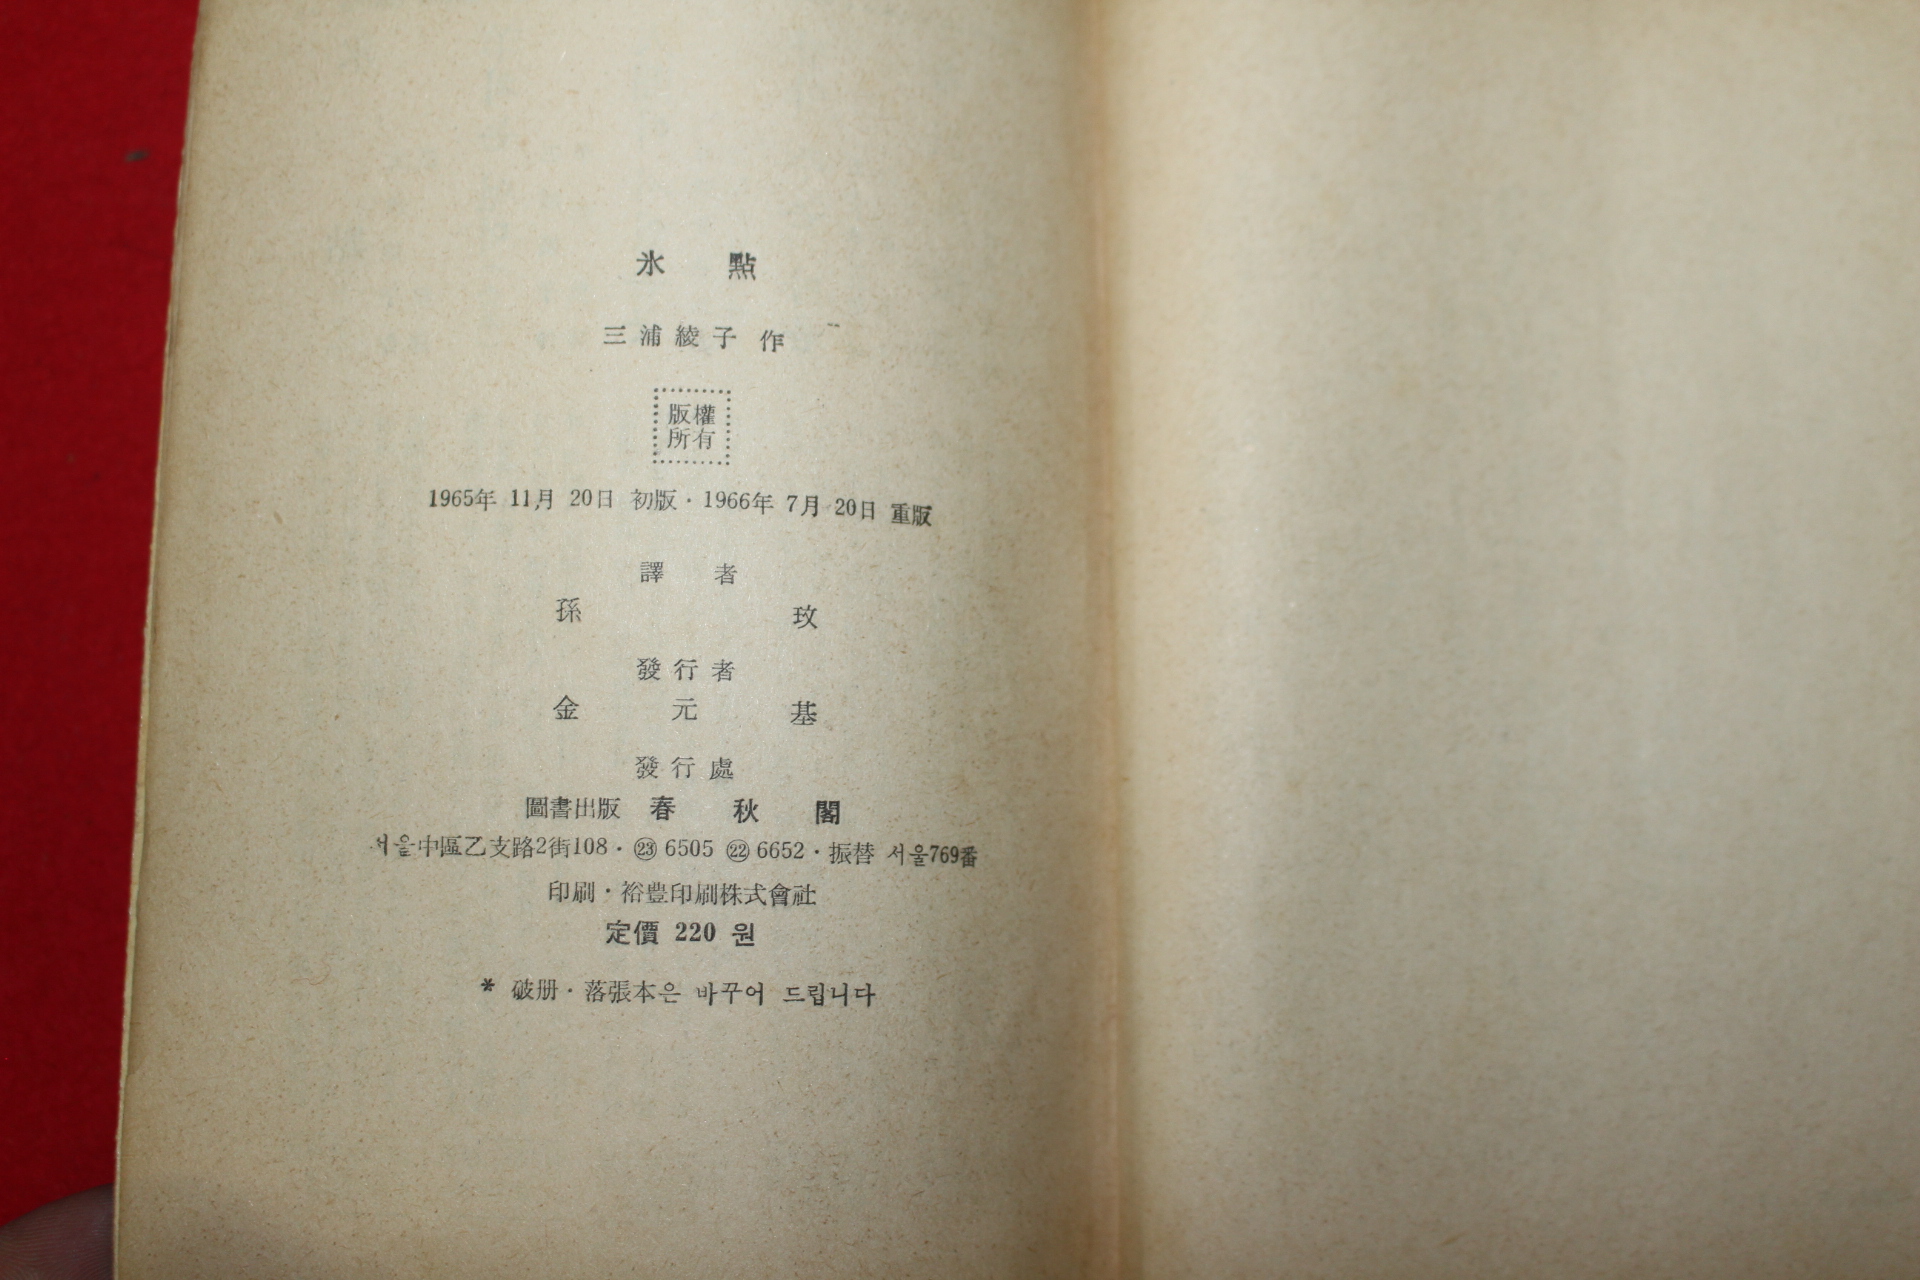 1966년 장편소설 빙점 상권